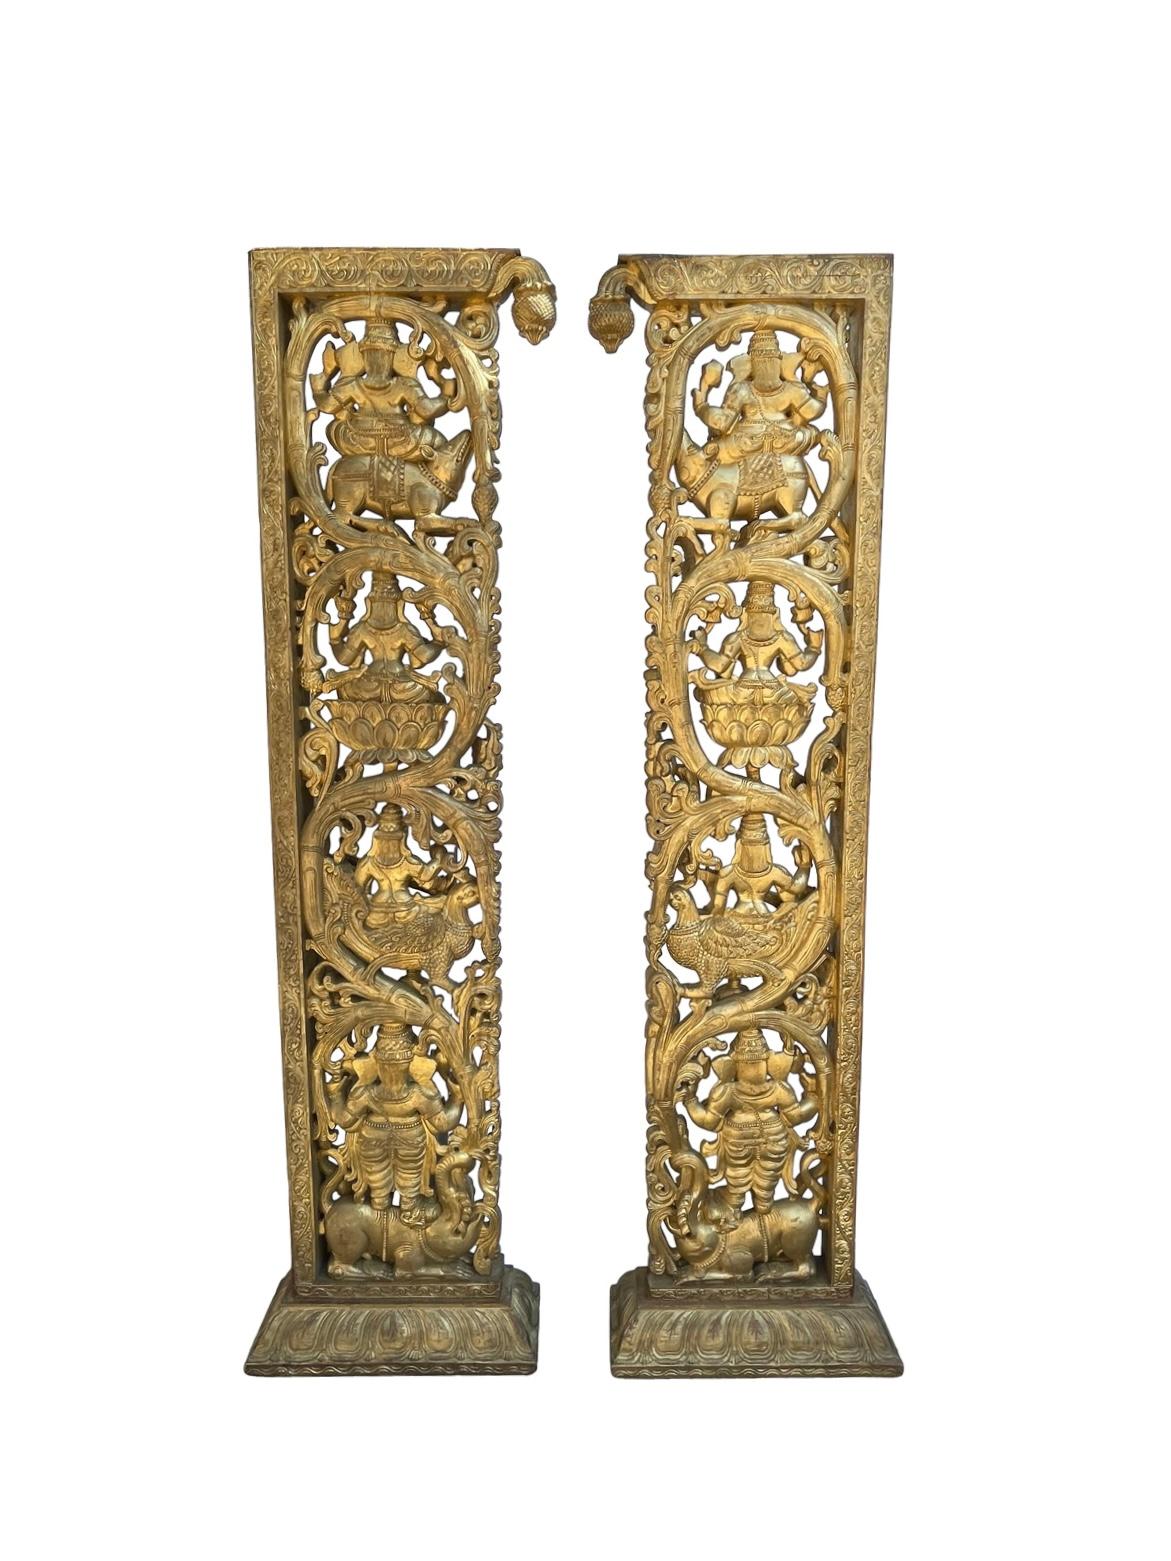 Exquisite Paar von Hand geschnitzt Ganesha vergoldet gerahmt Tür oder Raumteiler diese fertig sind vorne und hinten mit atemberaubenden Detail sie auch auf ihre eigenen stehen, sondern empfehlen Sicherung alle Fragen fühlen sich bitte frei zu